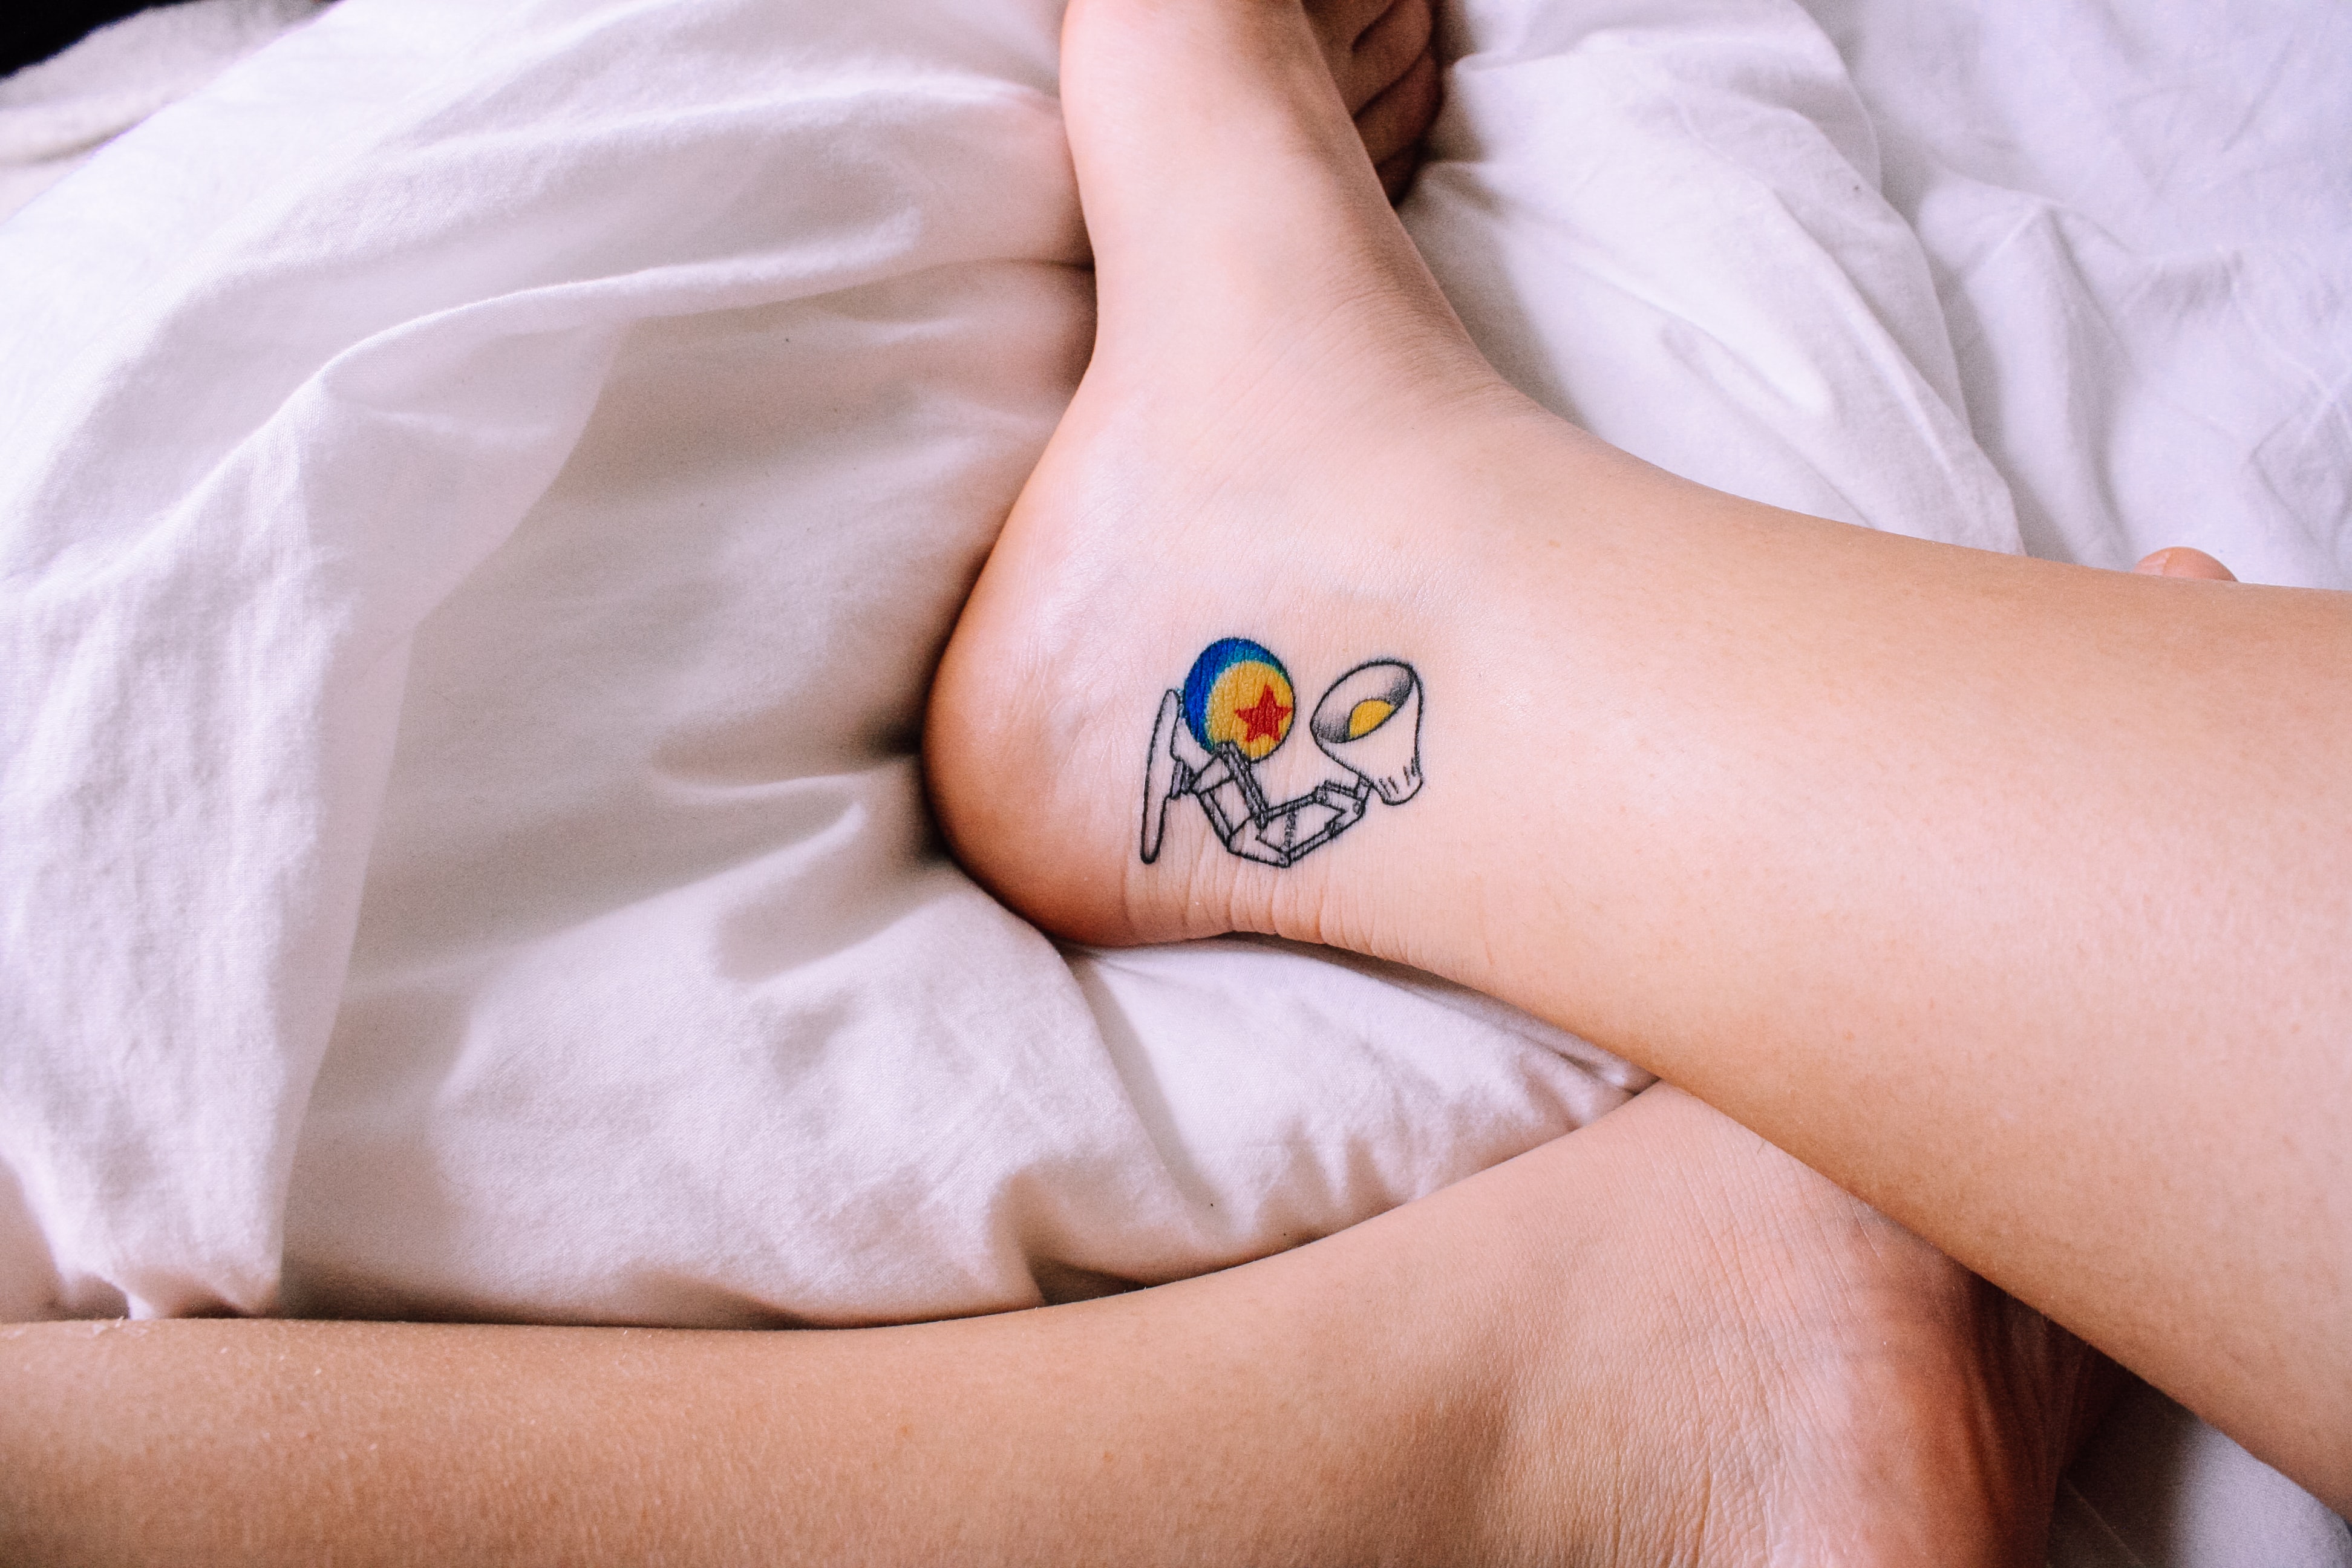 Tatuaż na stopie jest bolesny, ale będziesz zachwycona rezultatem